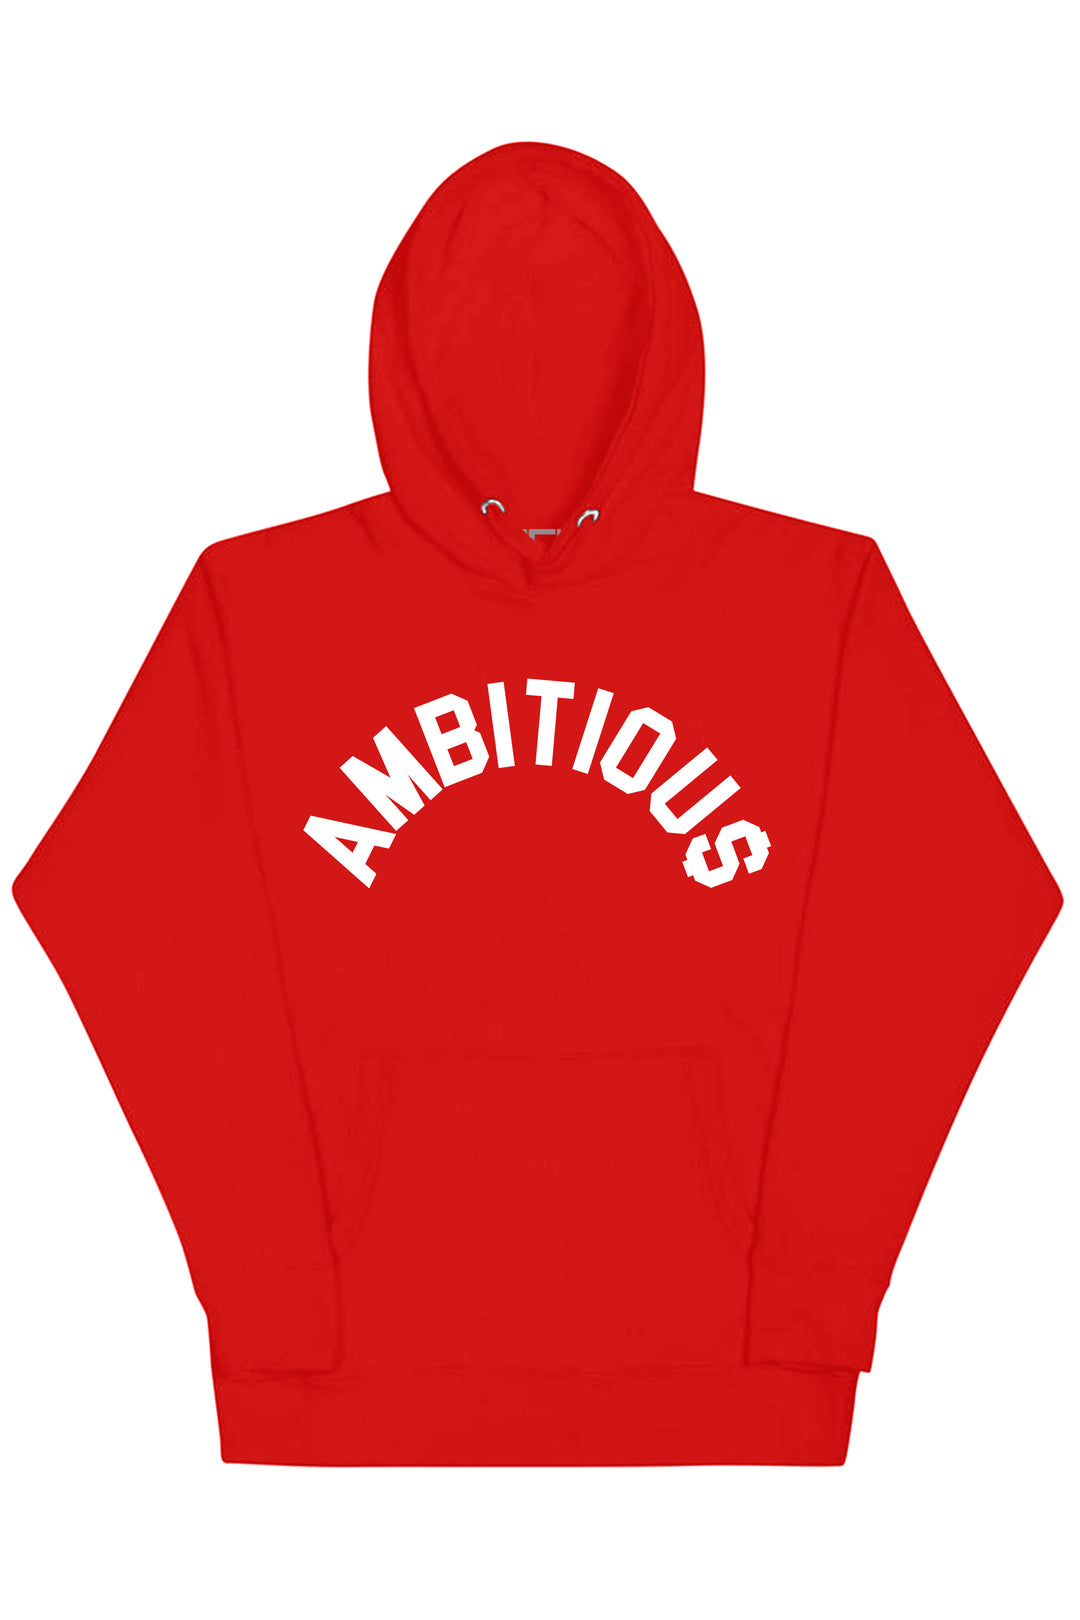 Ambitious Hoodie (White Logo) - Zamage